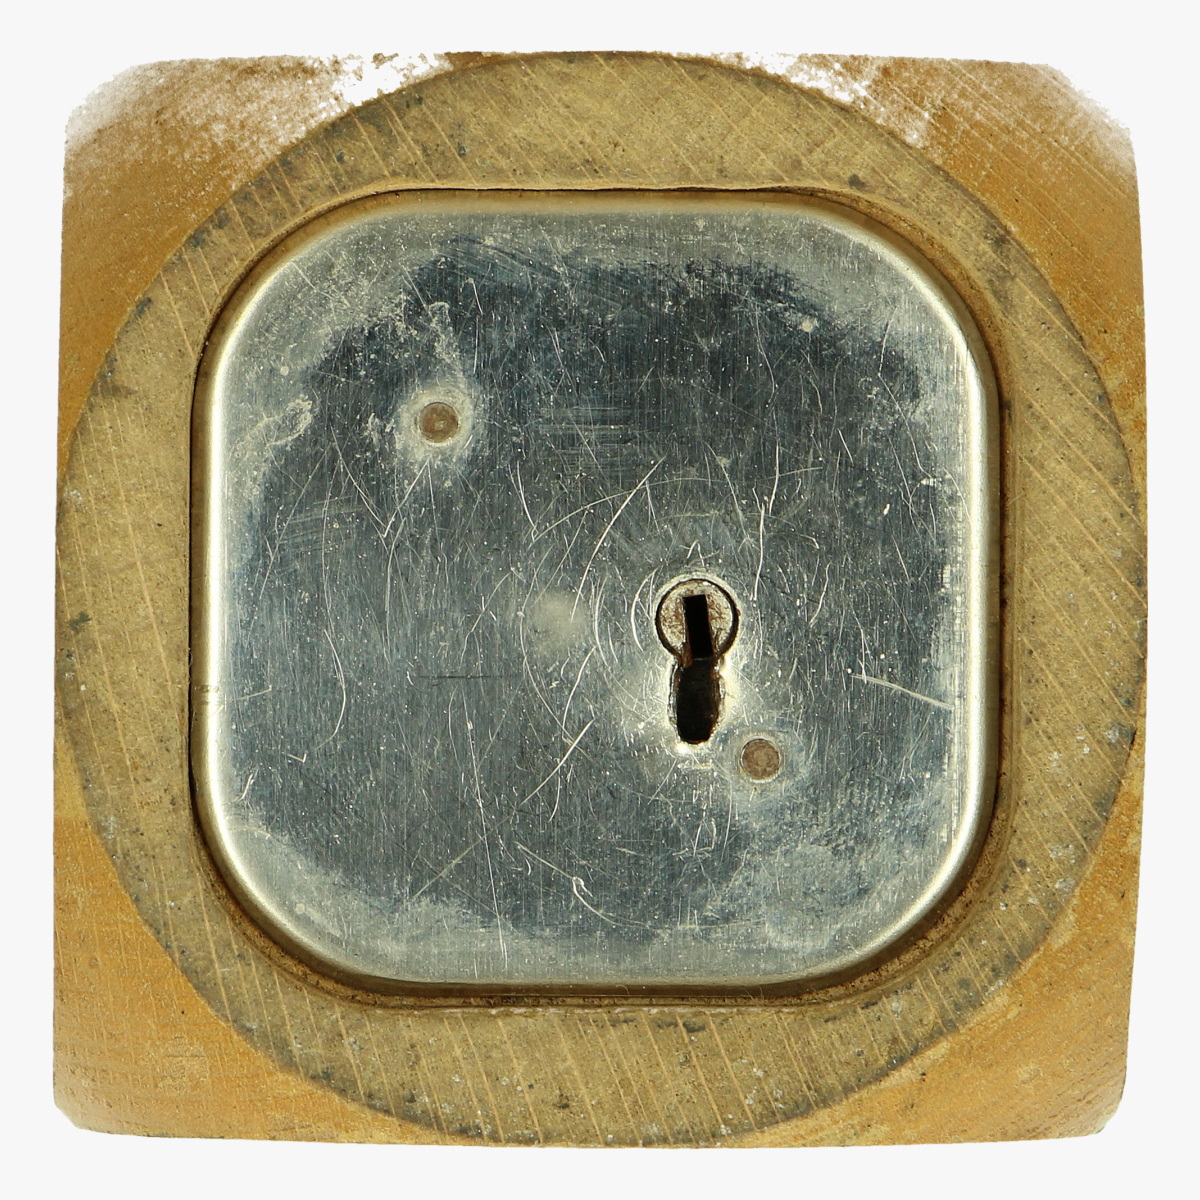 Afbeeldingen van spaarpot houten dobbelsteen